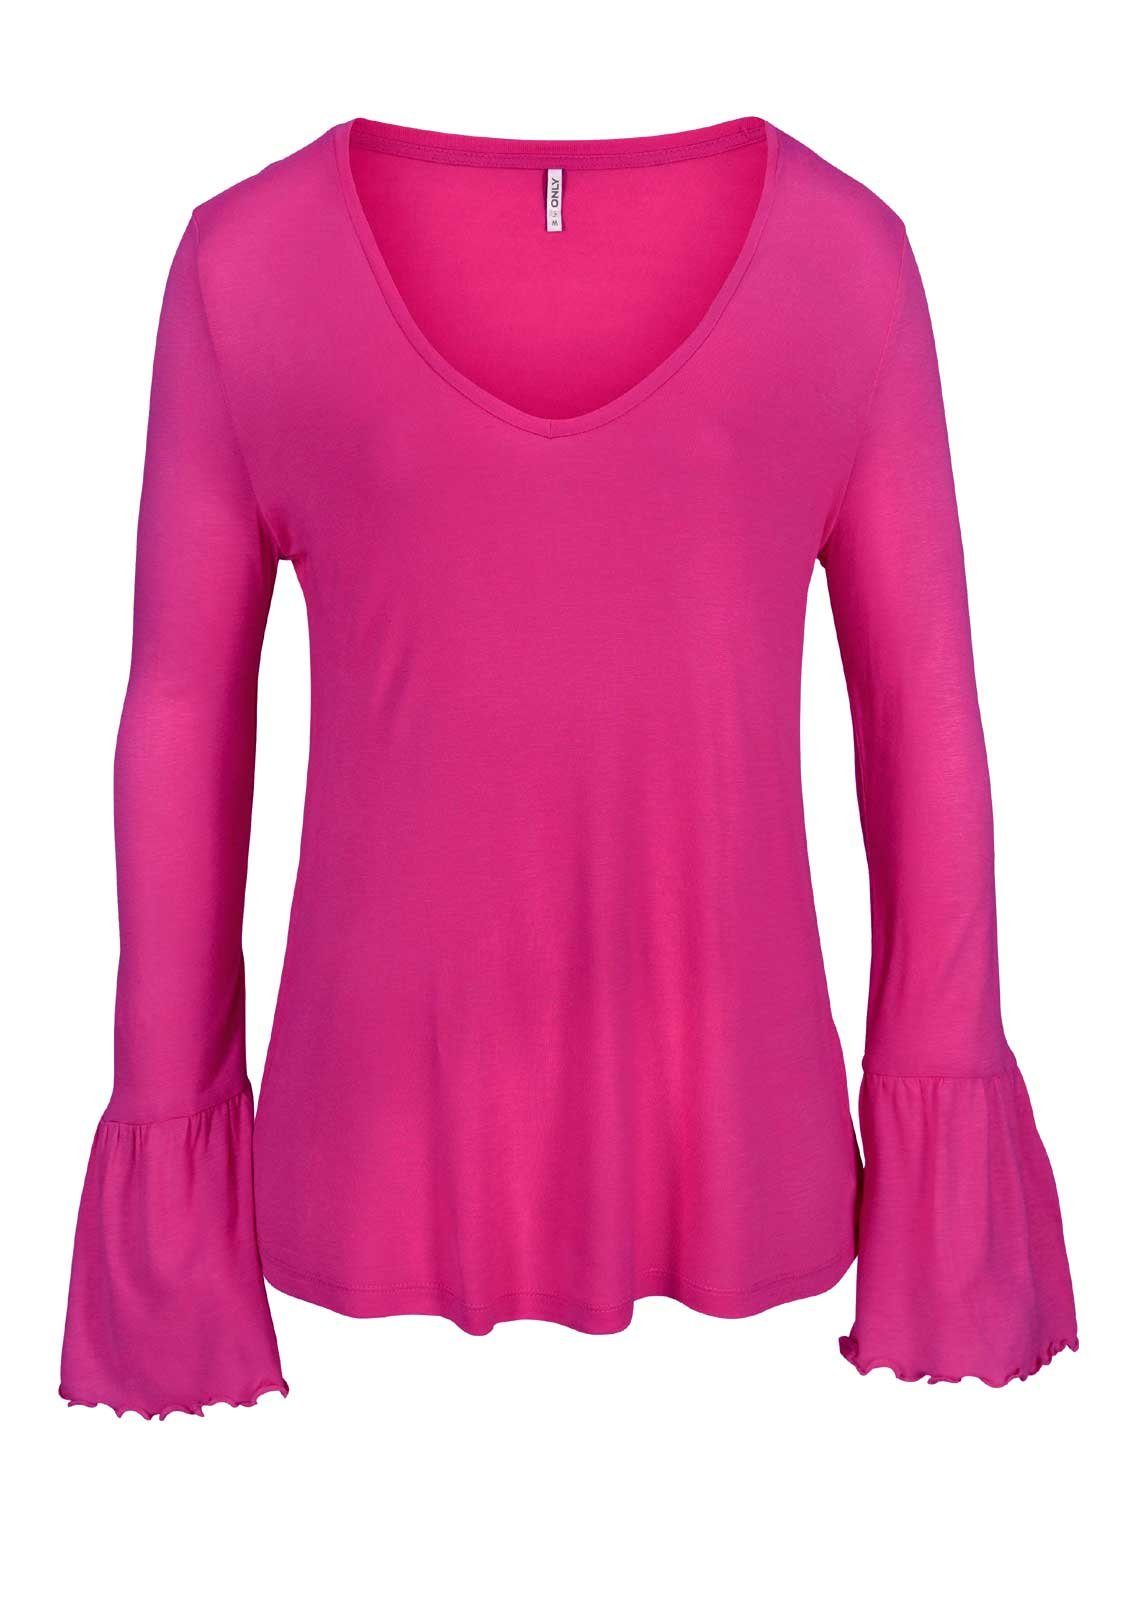 ONLY Longshirt Only Damen Marken-Shirt mit Volants, pink